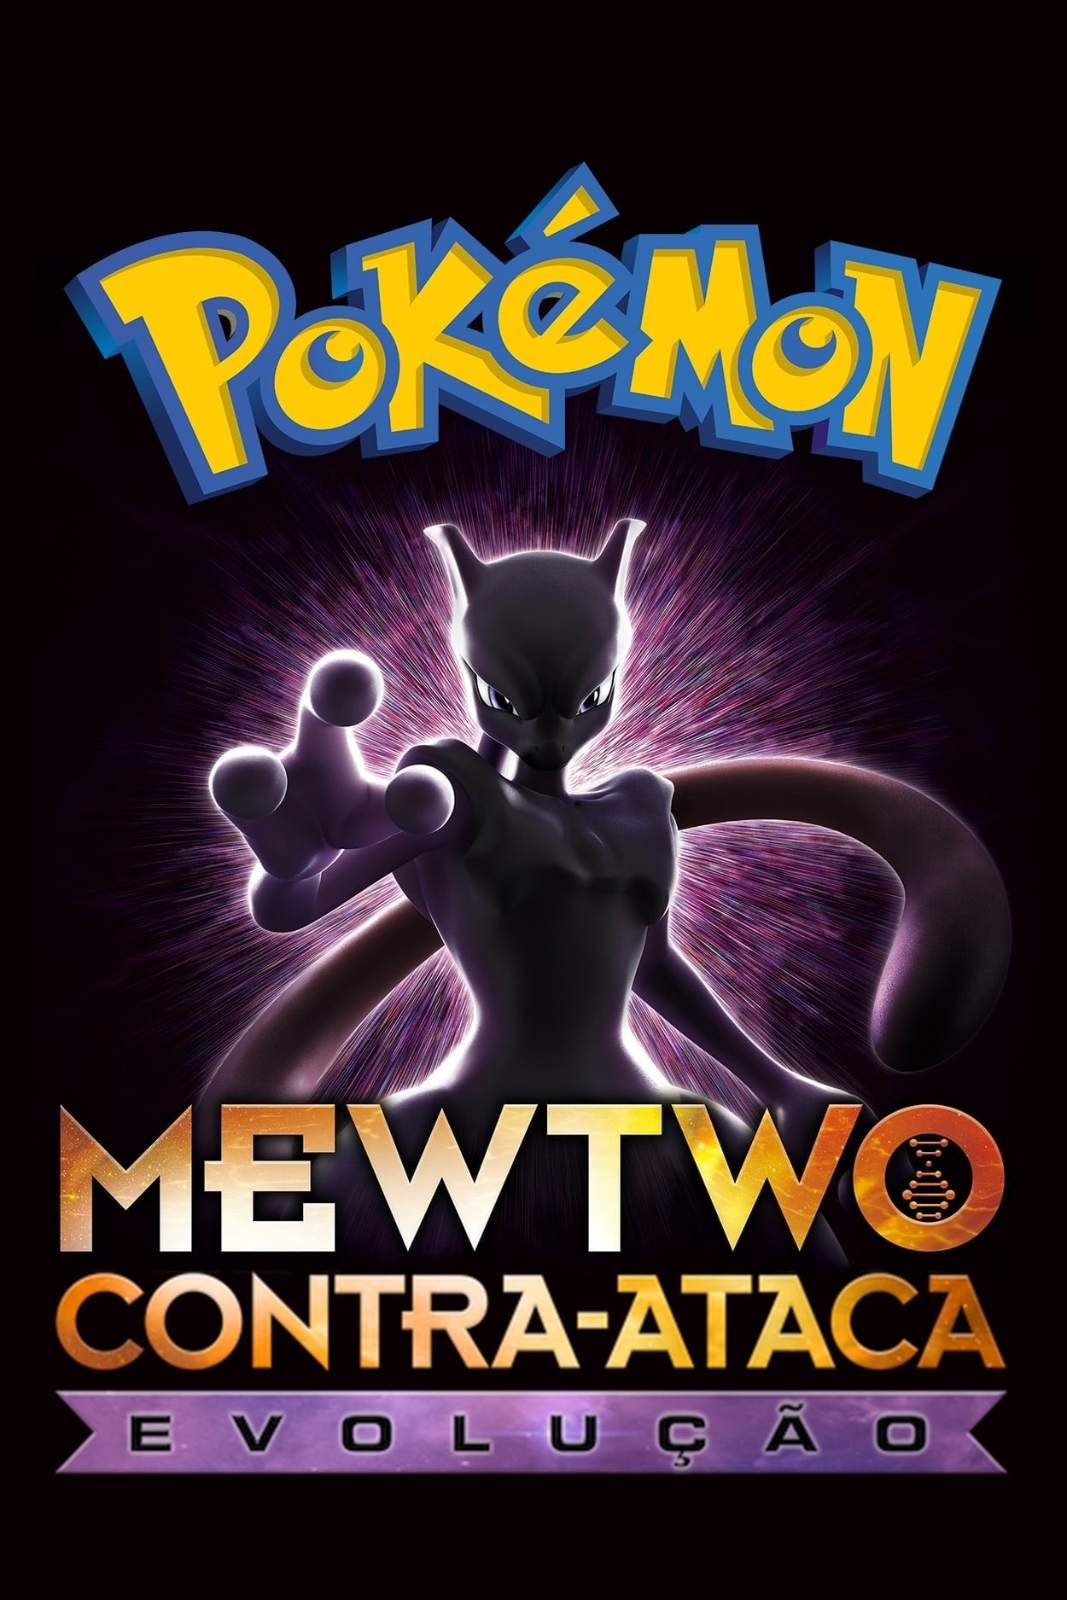 Pokémon: Mewtwo contra-ataca - Evolução estreia em fevereiro na Netflix.